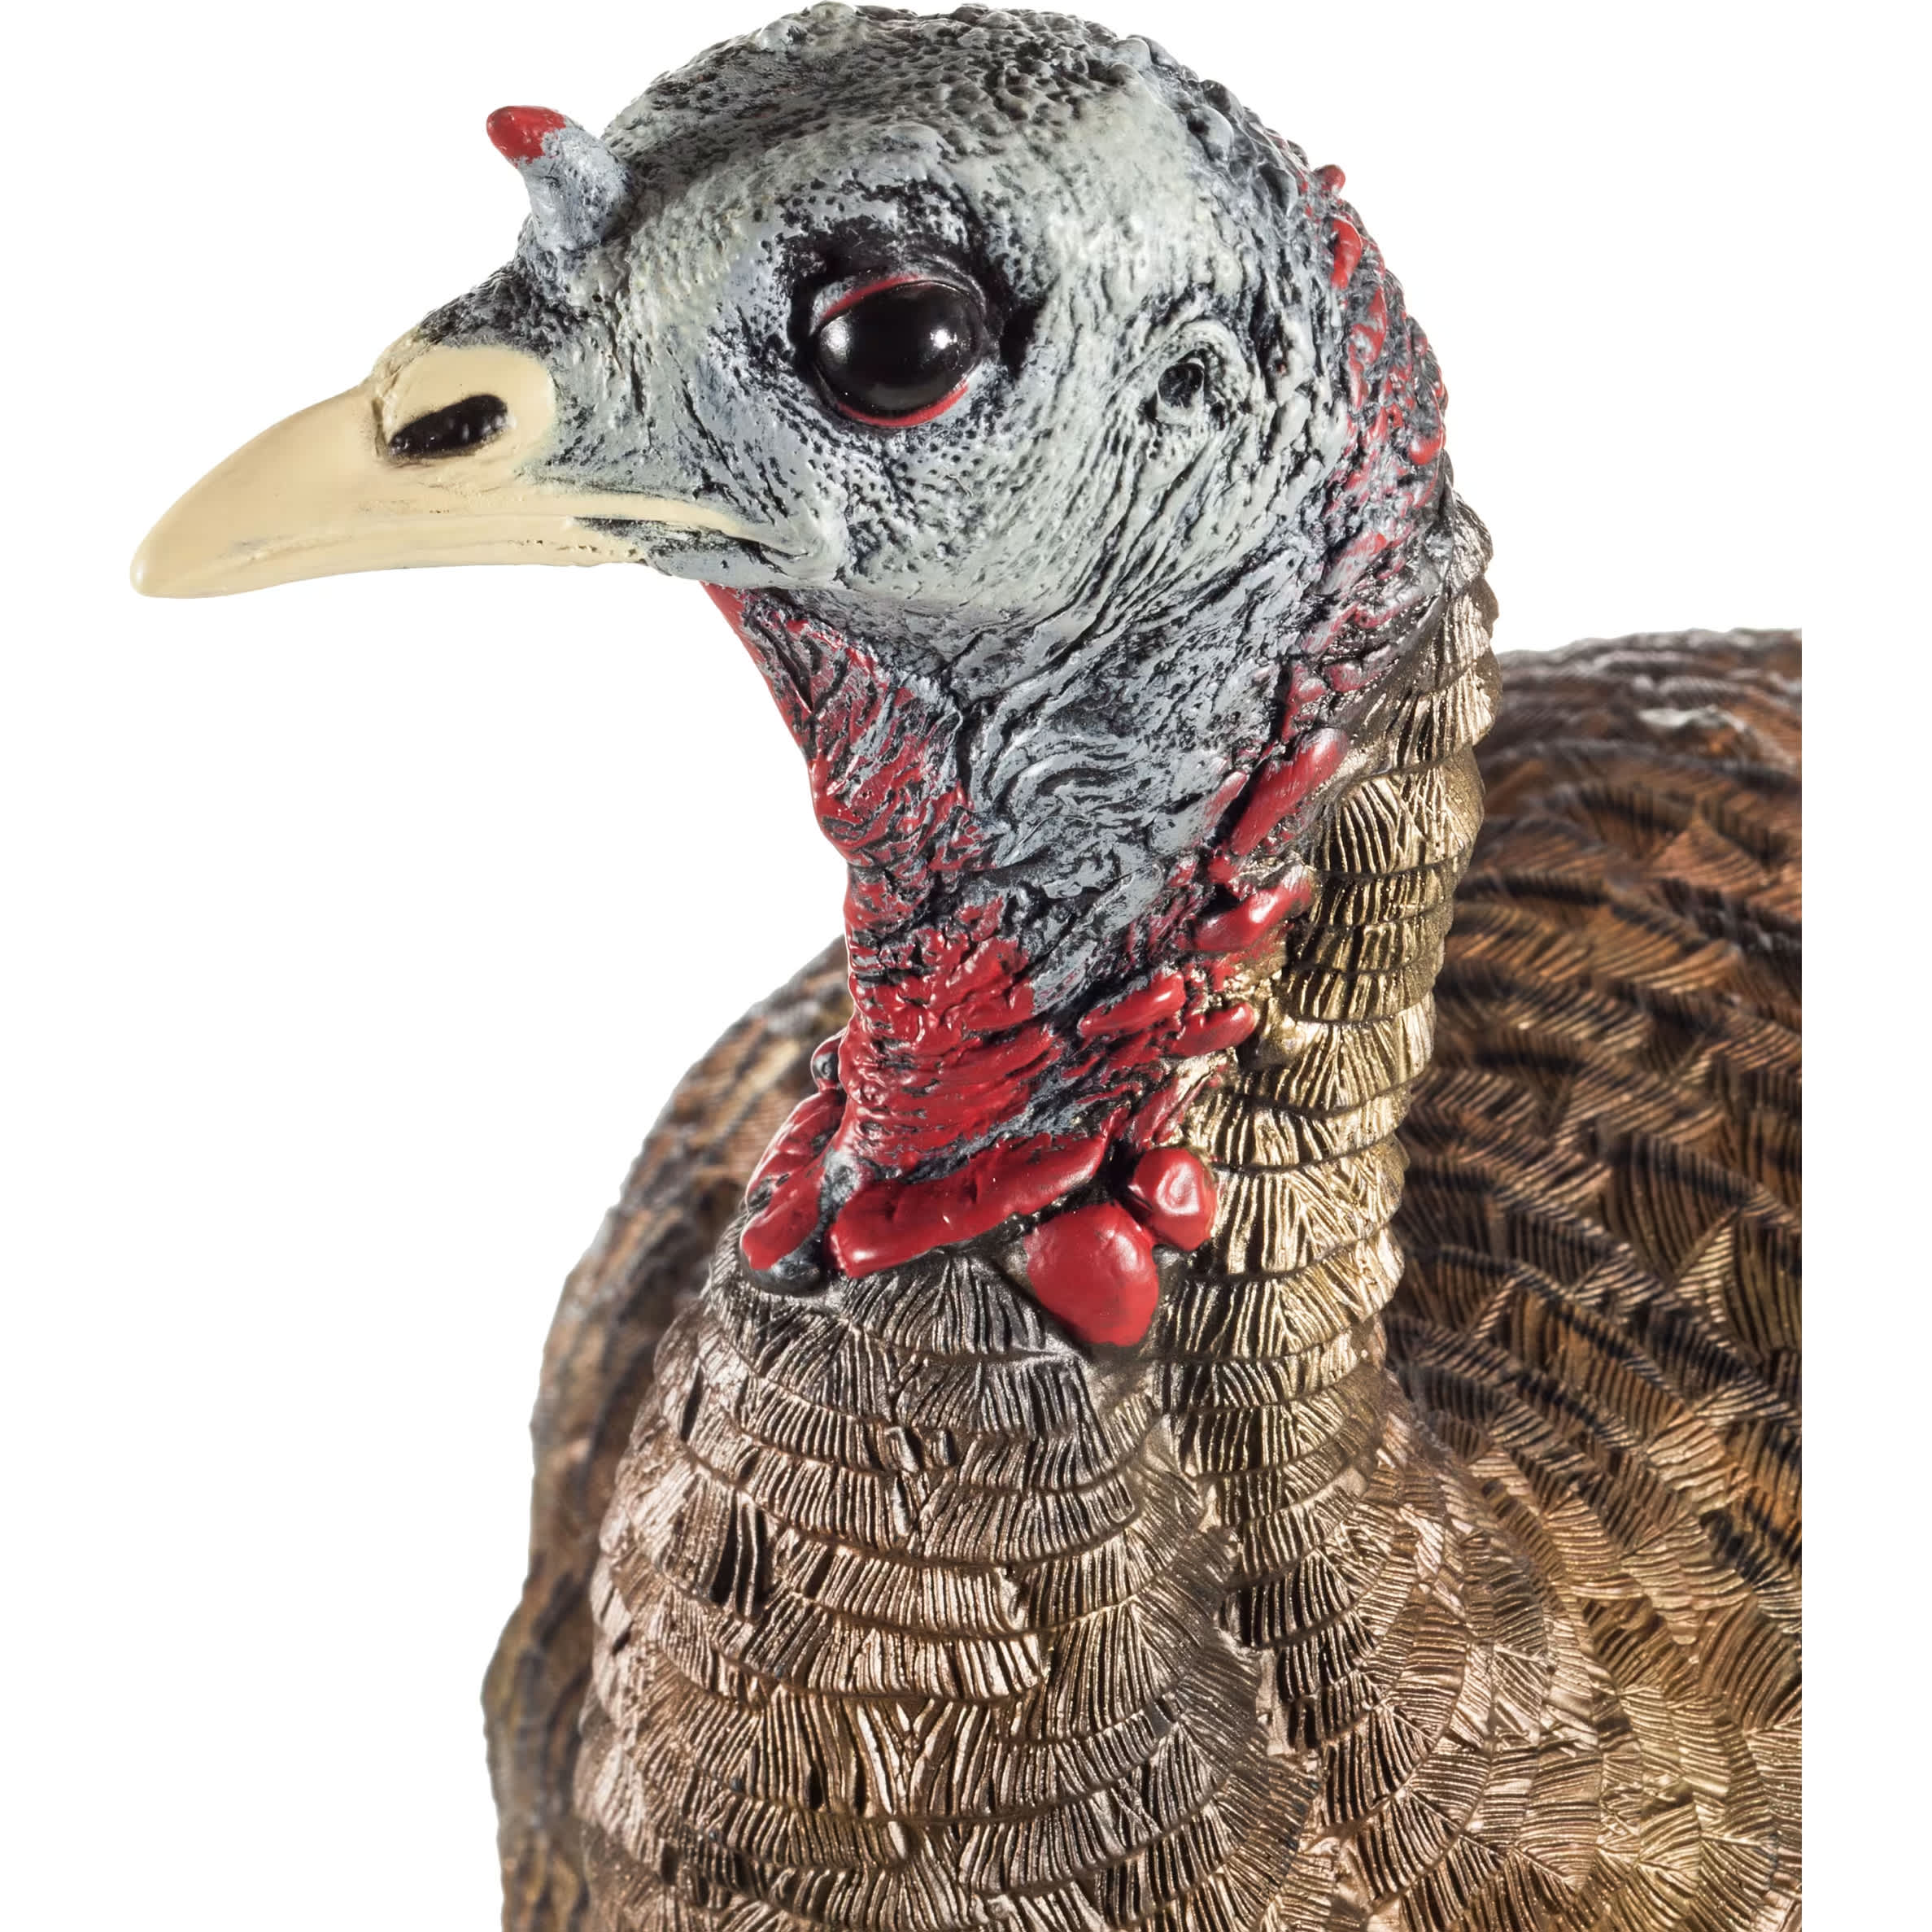 Avian-X® LCD Lookout Hen Turkey Decoy